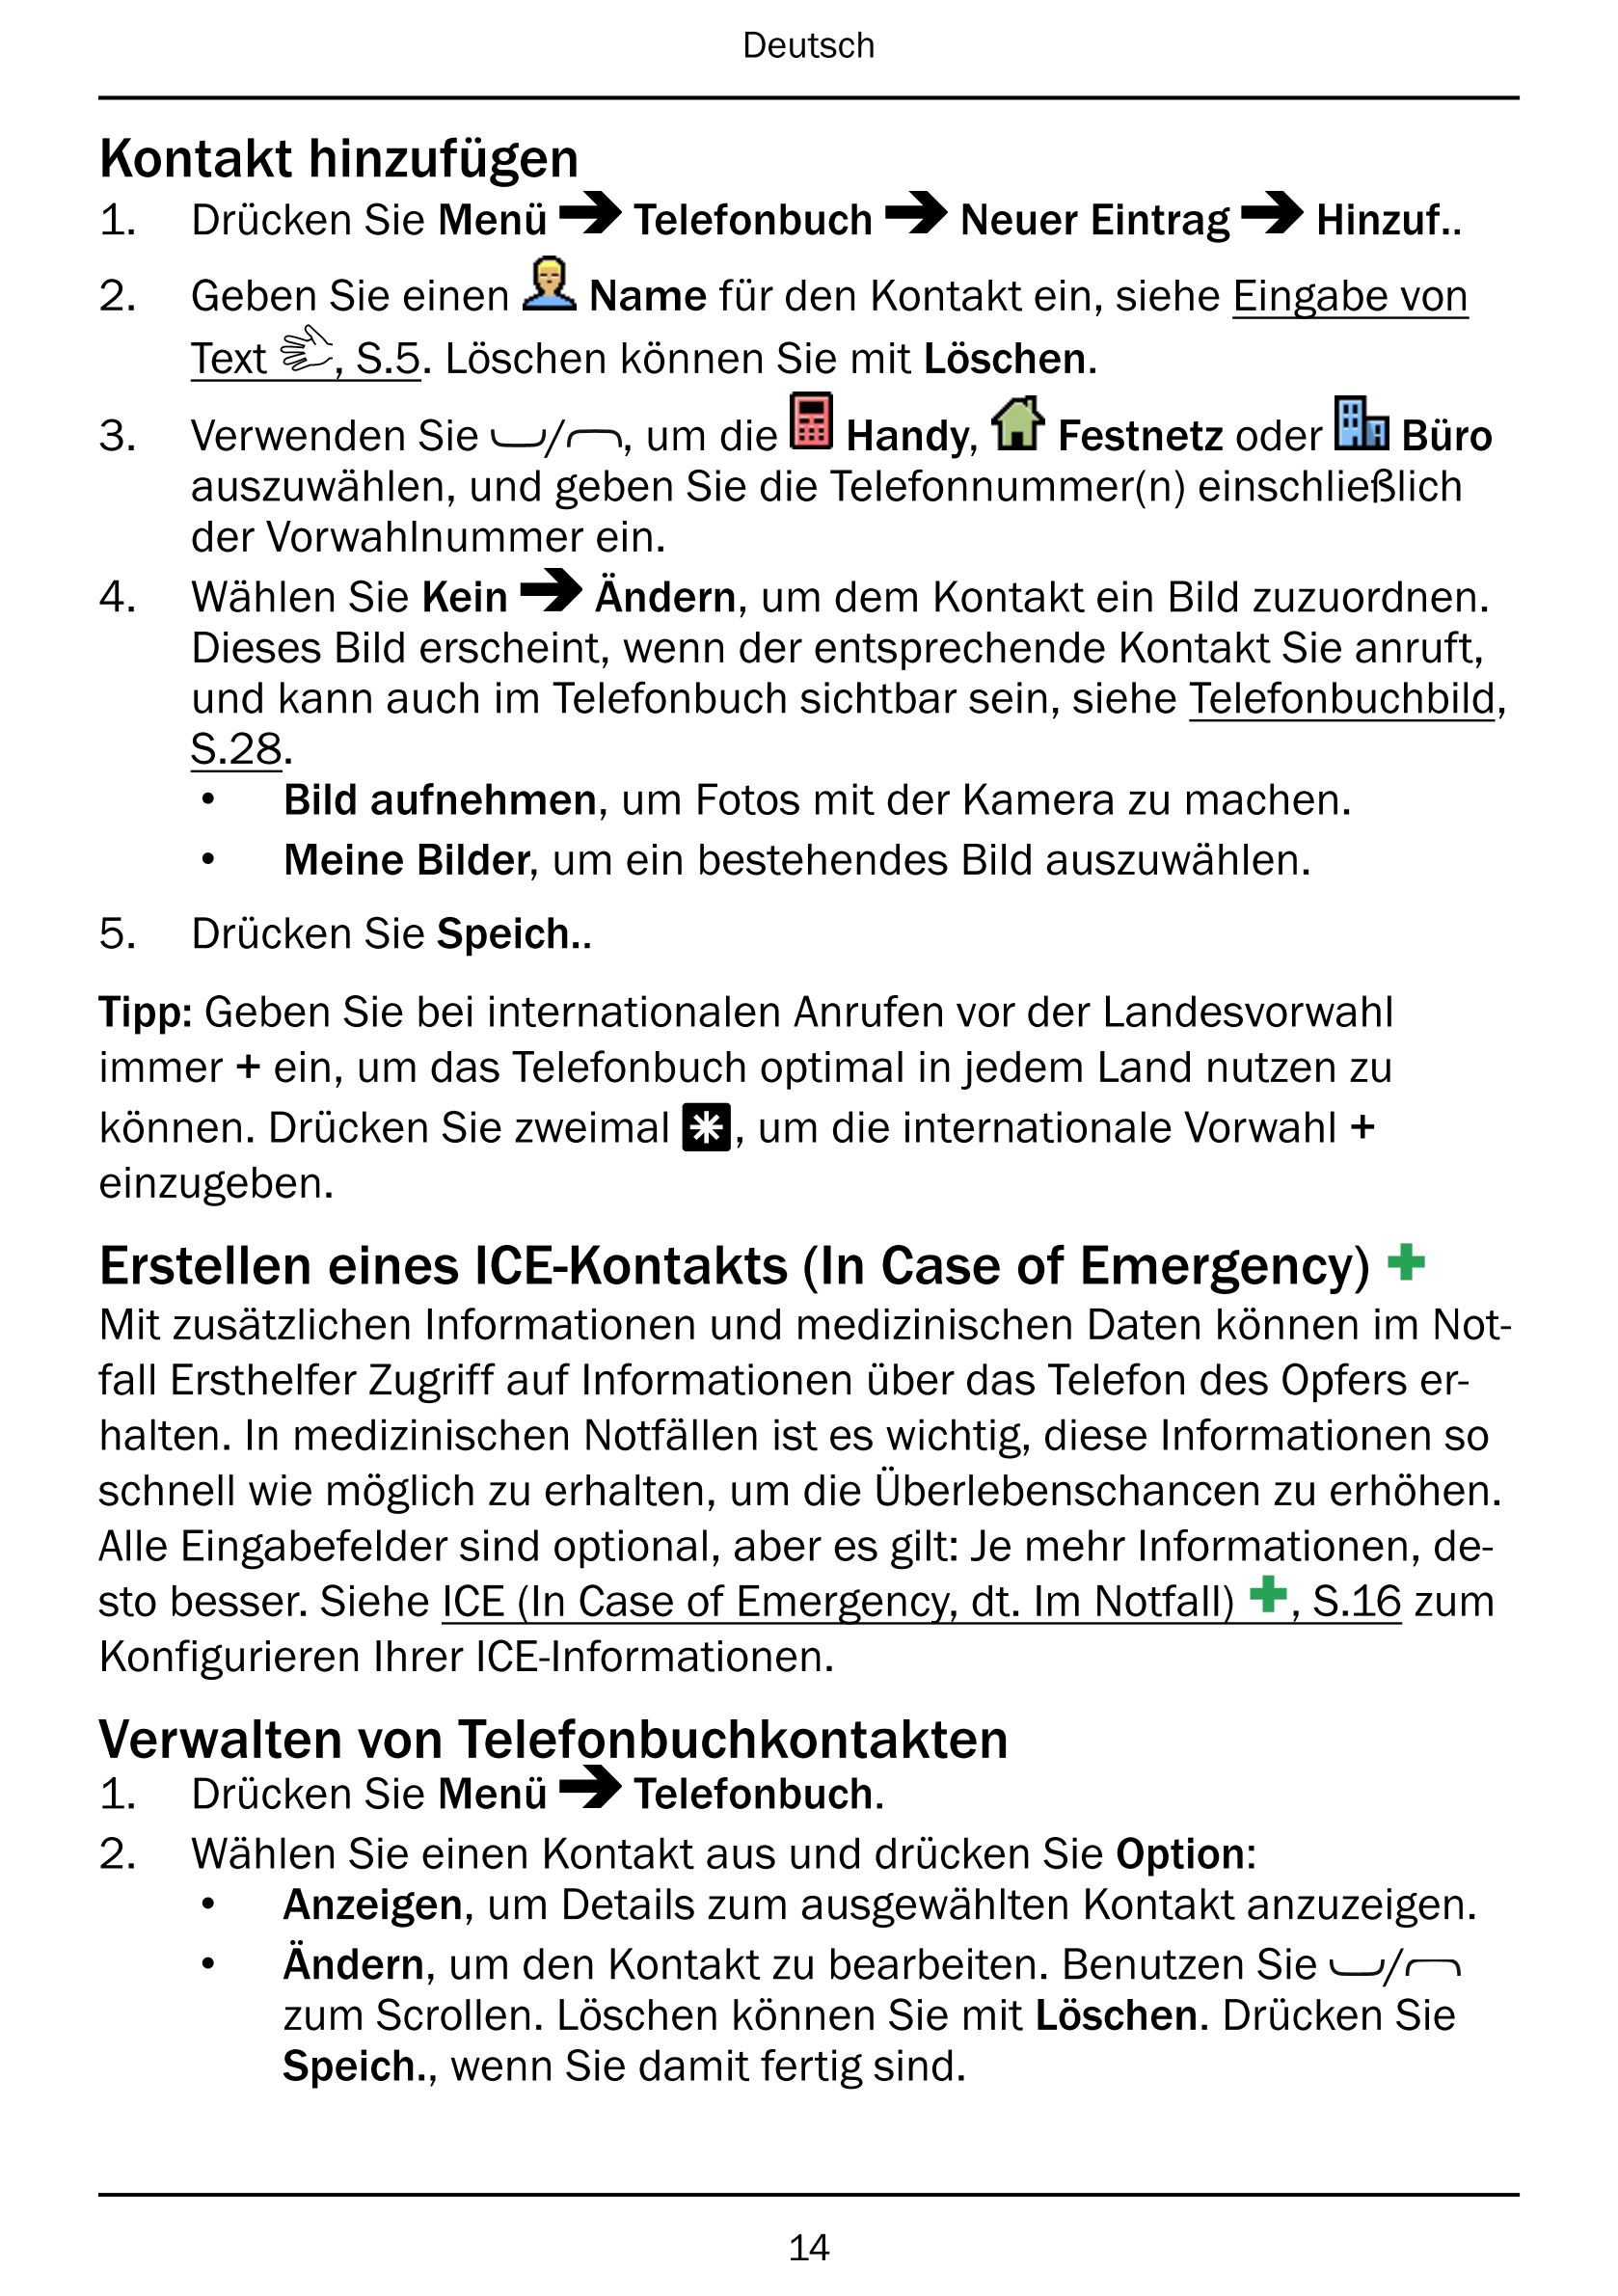 Deutsch
Kontakt hinzufügen
1.     Drücken Sie Menü Telefonbuch Neuer Eintrag Hinzuf..
2.     Geben Sie einen Name für den Kontak